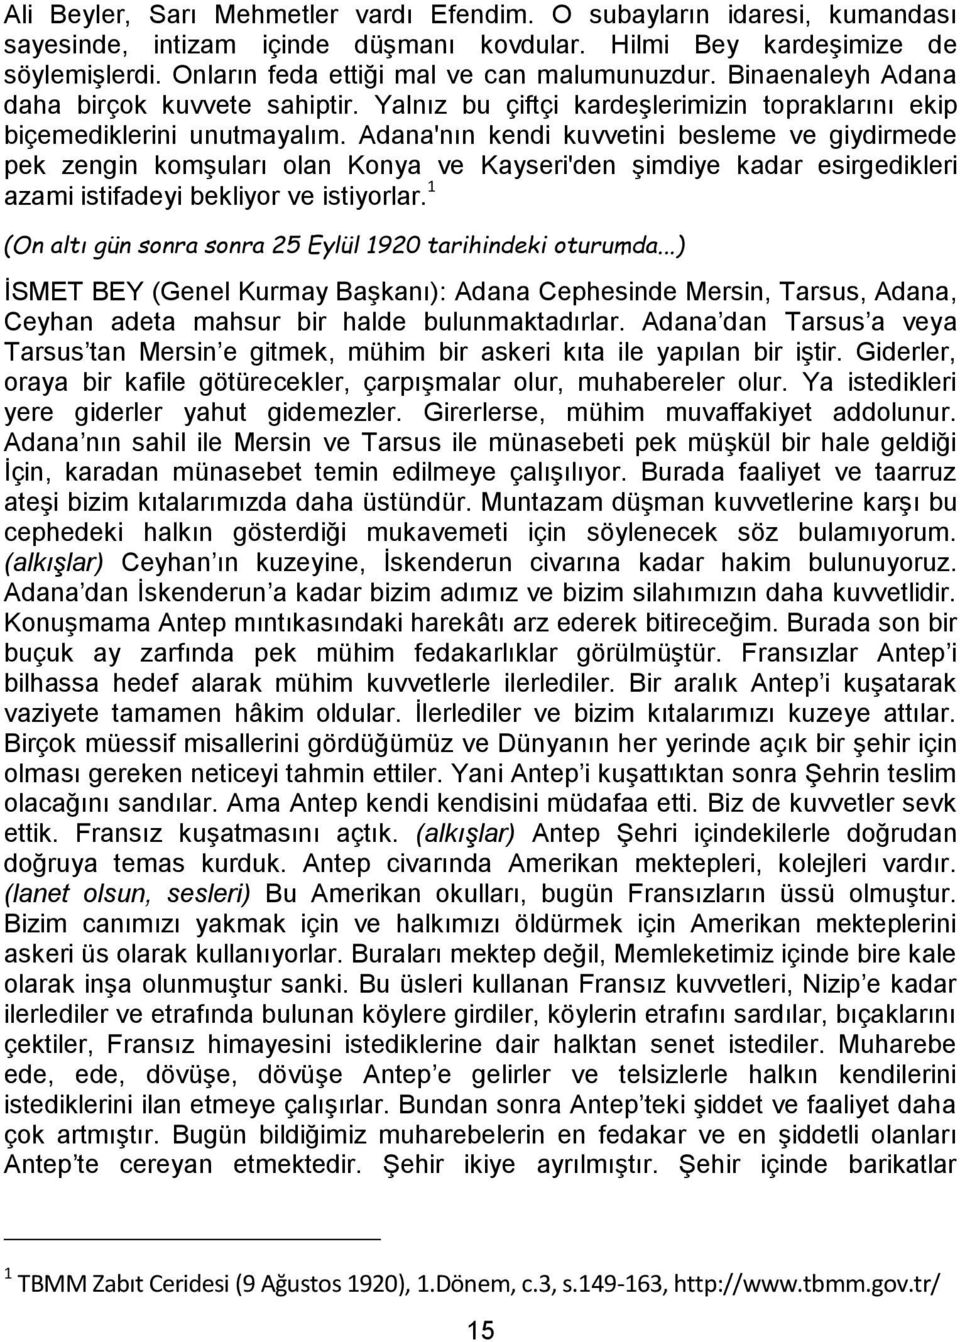 Adana'nın kendi kuvvetini besleme ve giydirmede pek zengin komşuları olan Konya ve Kayseri'den şimdiye kadar esirgedikleri azami istifadeyi bekliyor ve istiyorlar.